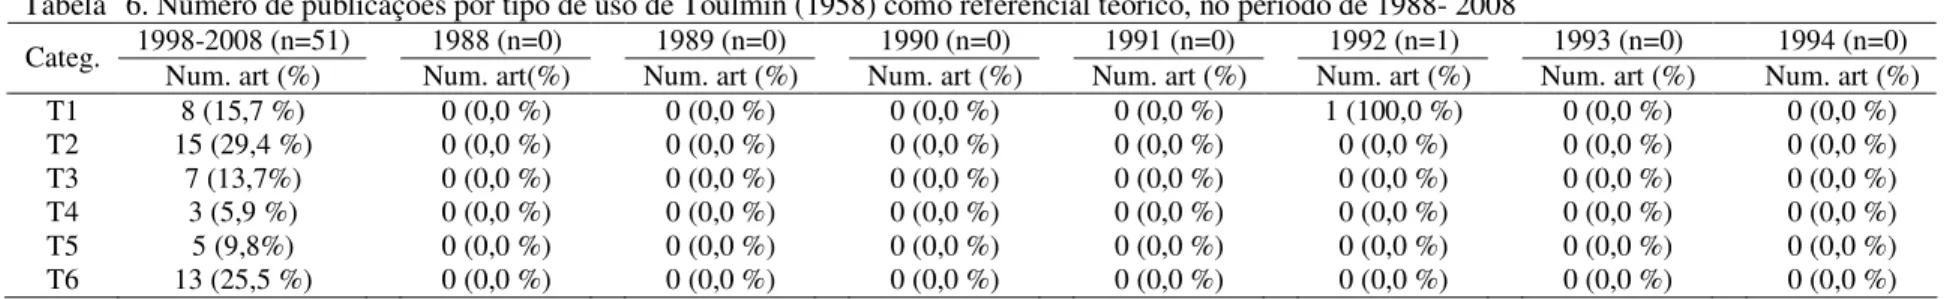 Tabela   6. Número de publicações por tipo de uso de Toulmin (1958) como referencial teórico, no período de 1988- 2008 